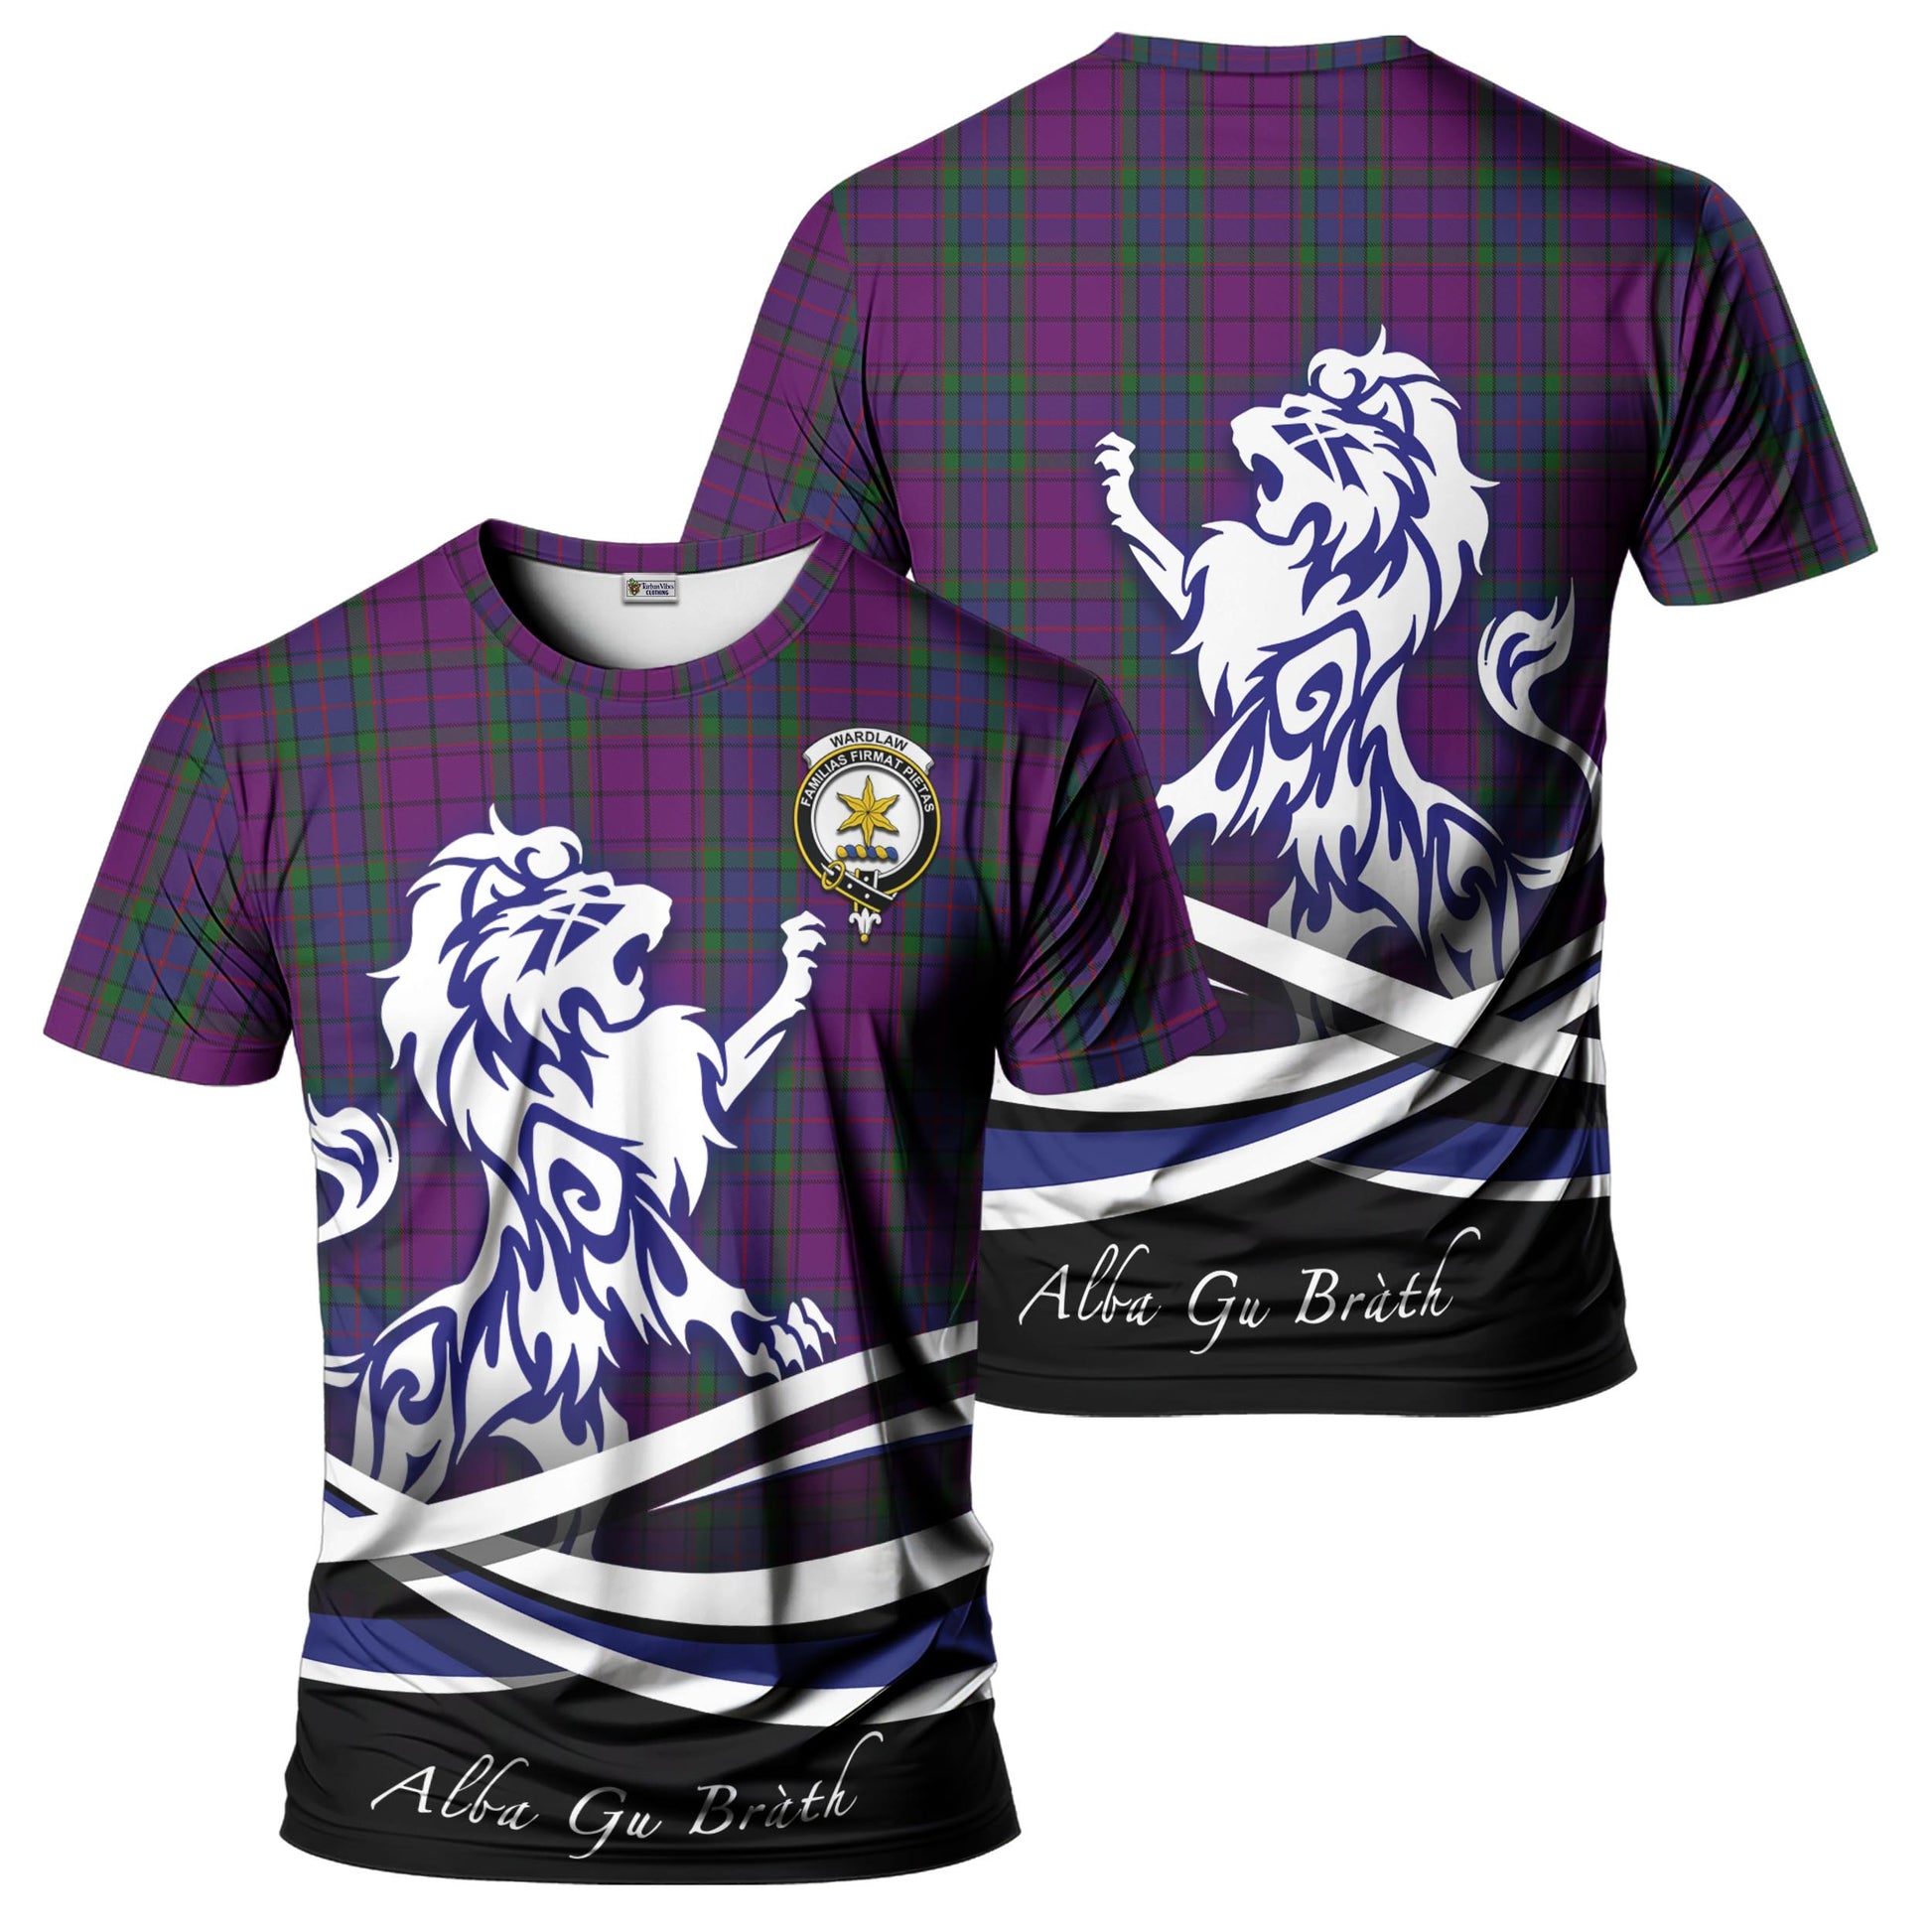 wardlaw-tartan-t-shirt-with-alba-gu-brath-regal-lion-emblem